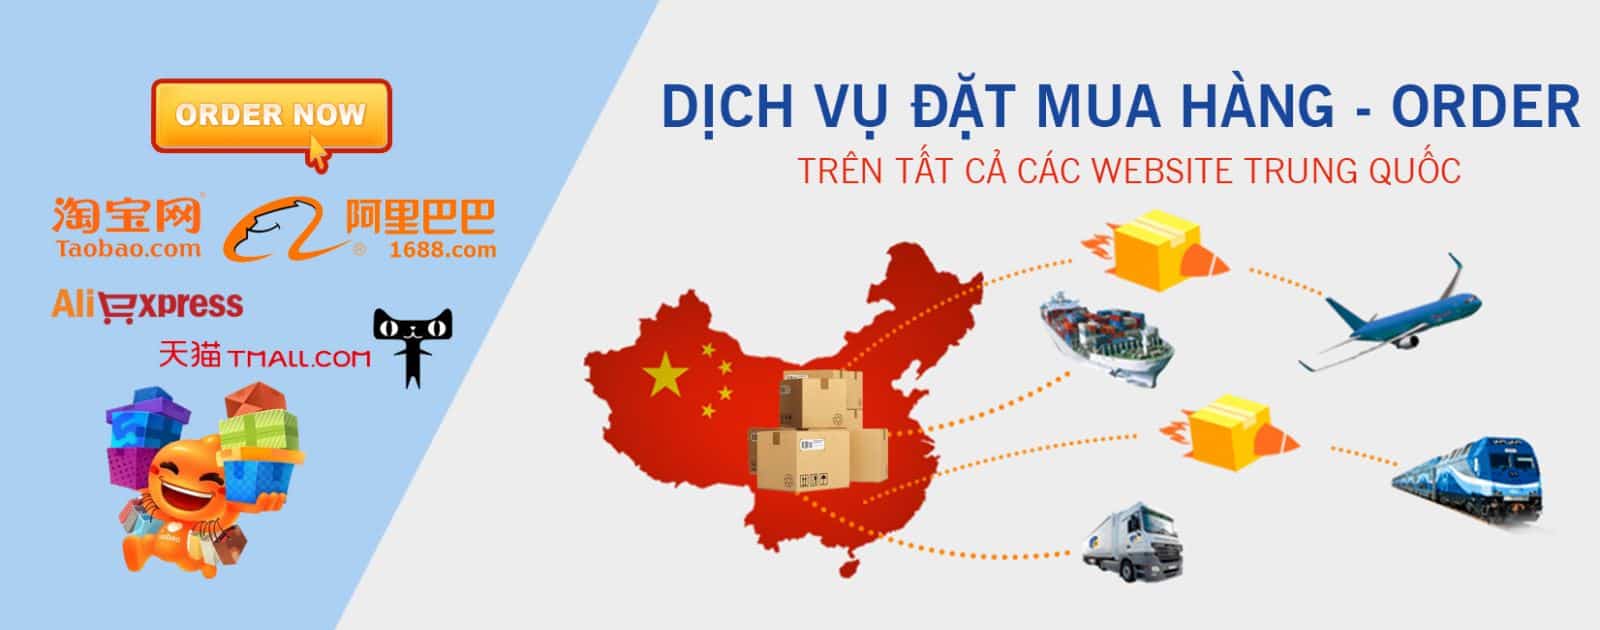 Bảng giá chuyển hàng Trung Quốc về Đà Nẵng và cách mua hàng trên Tmall